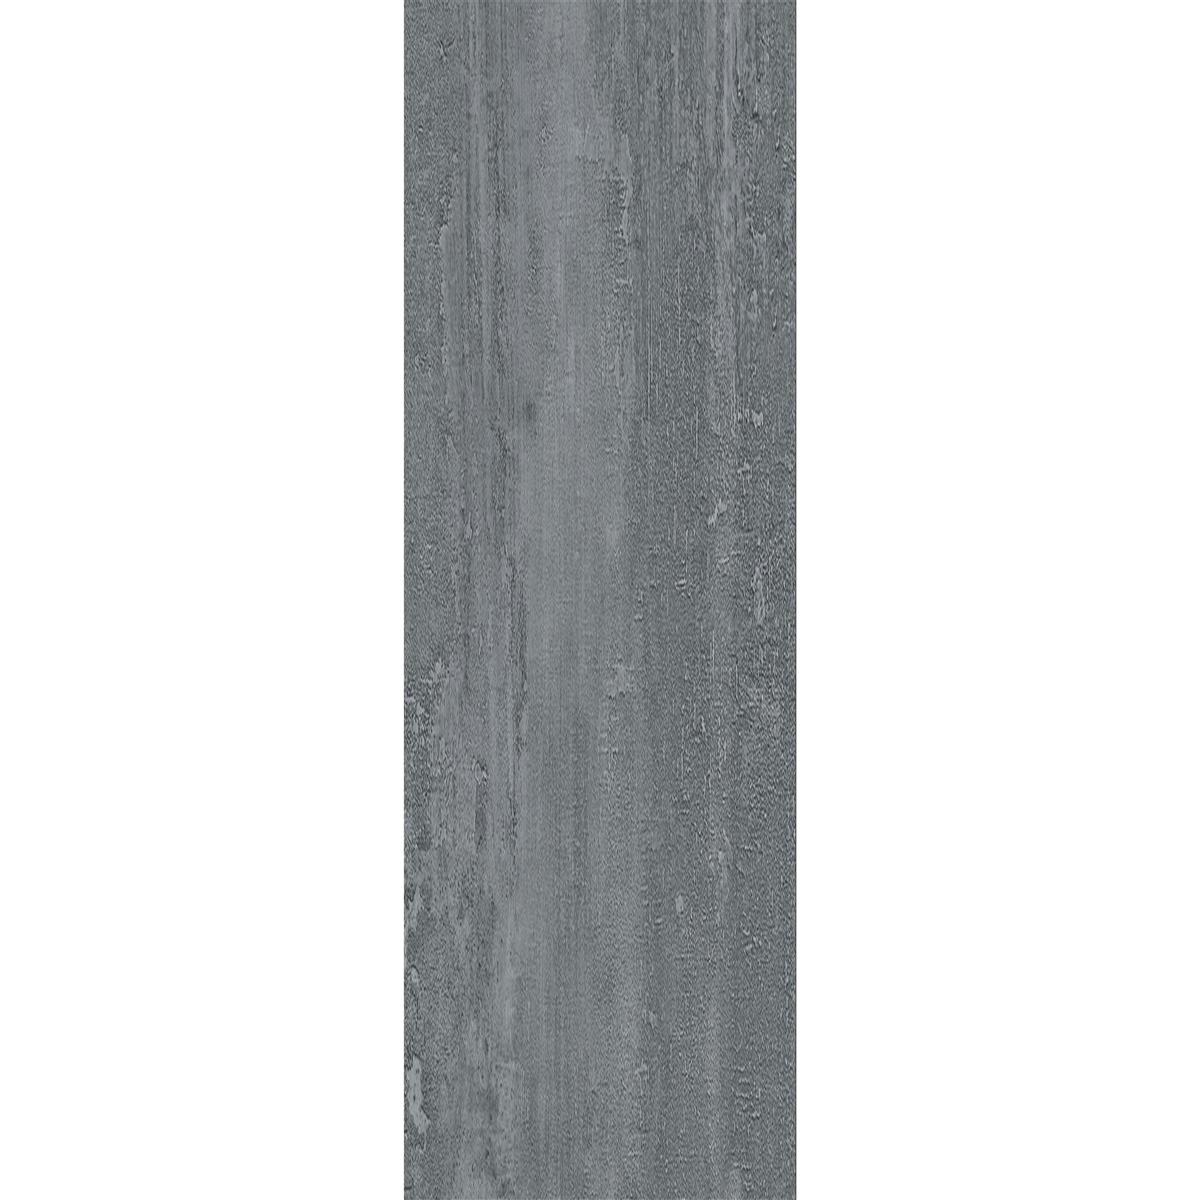 Piastrelle In Vinile Sistema A Clic Gandia Grigio Chiaro 17,2x121cm